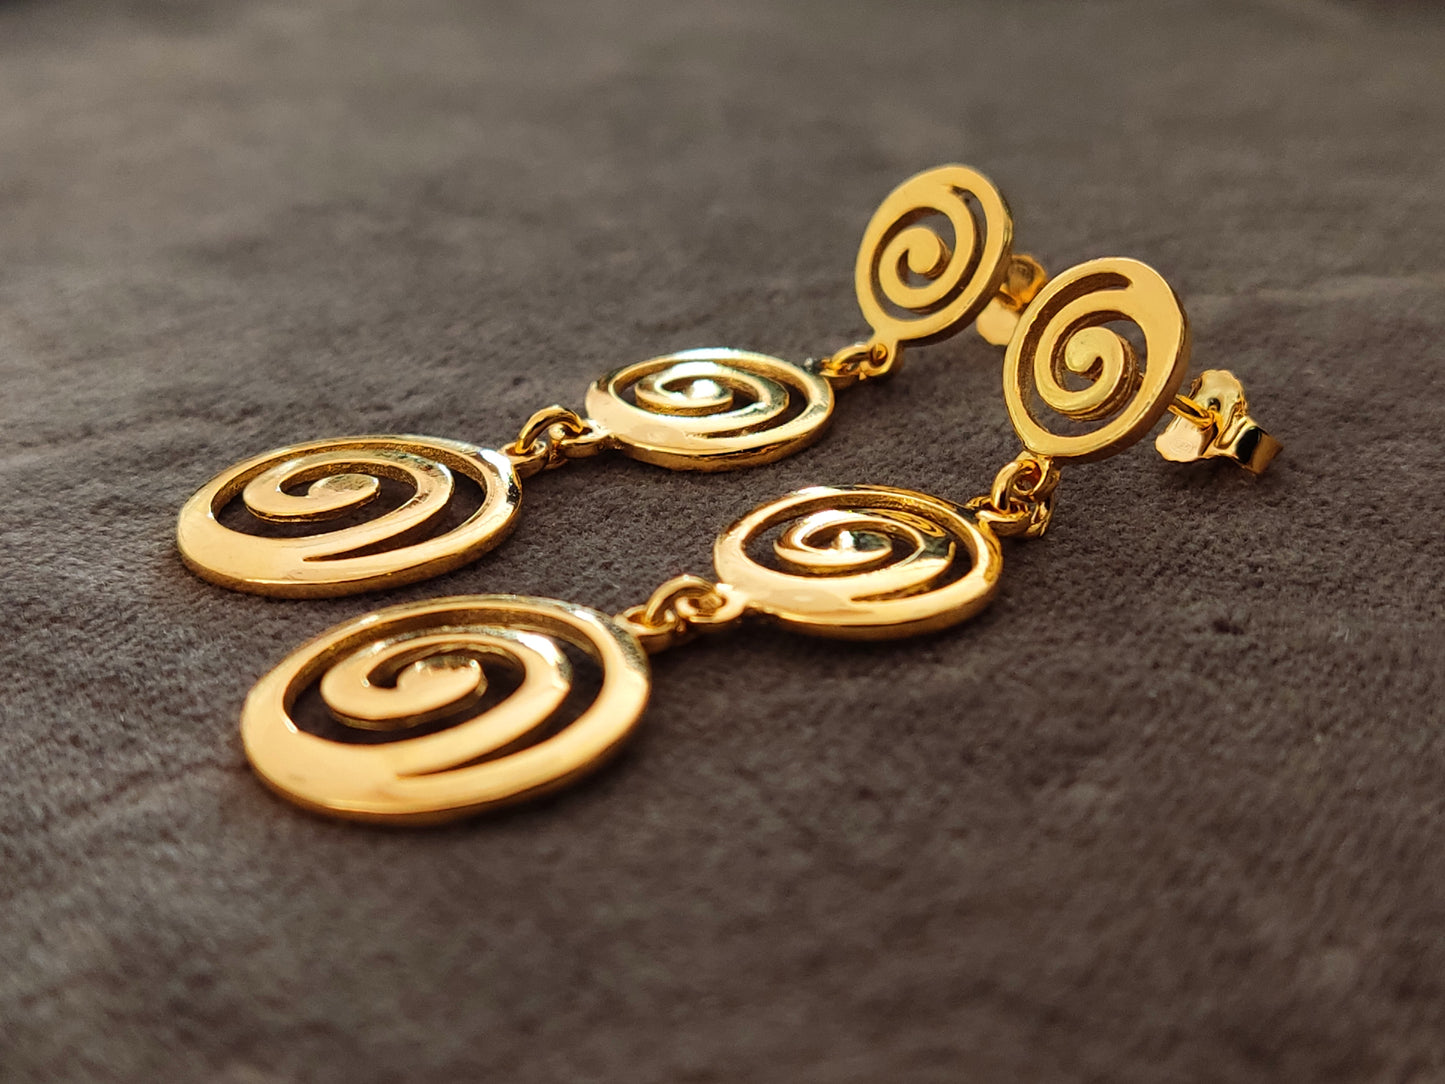 Griechische Ohrringe aus dreifach spiralförmigem, vergoldetem Silber